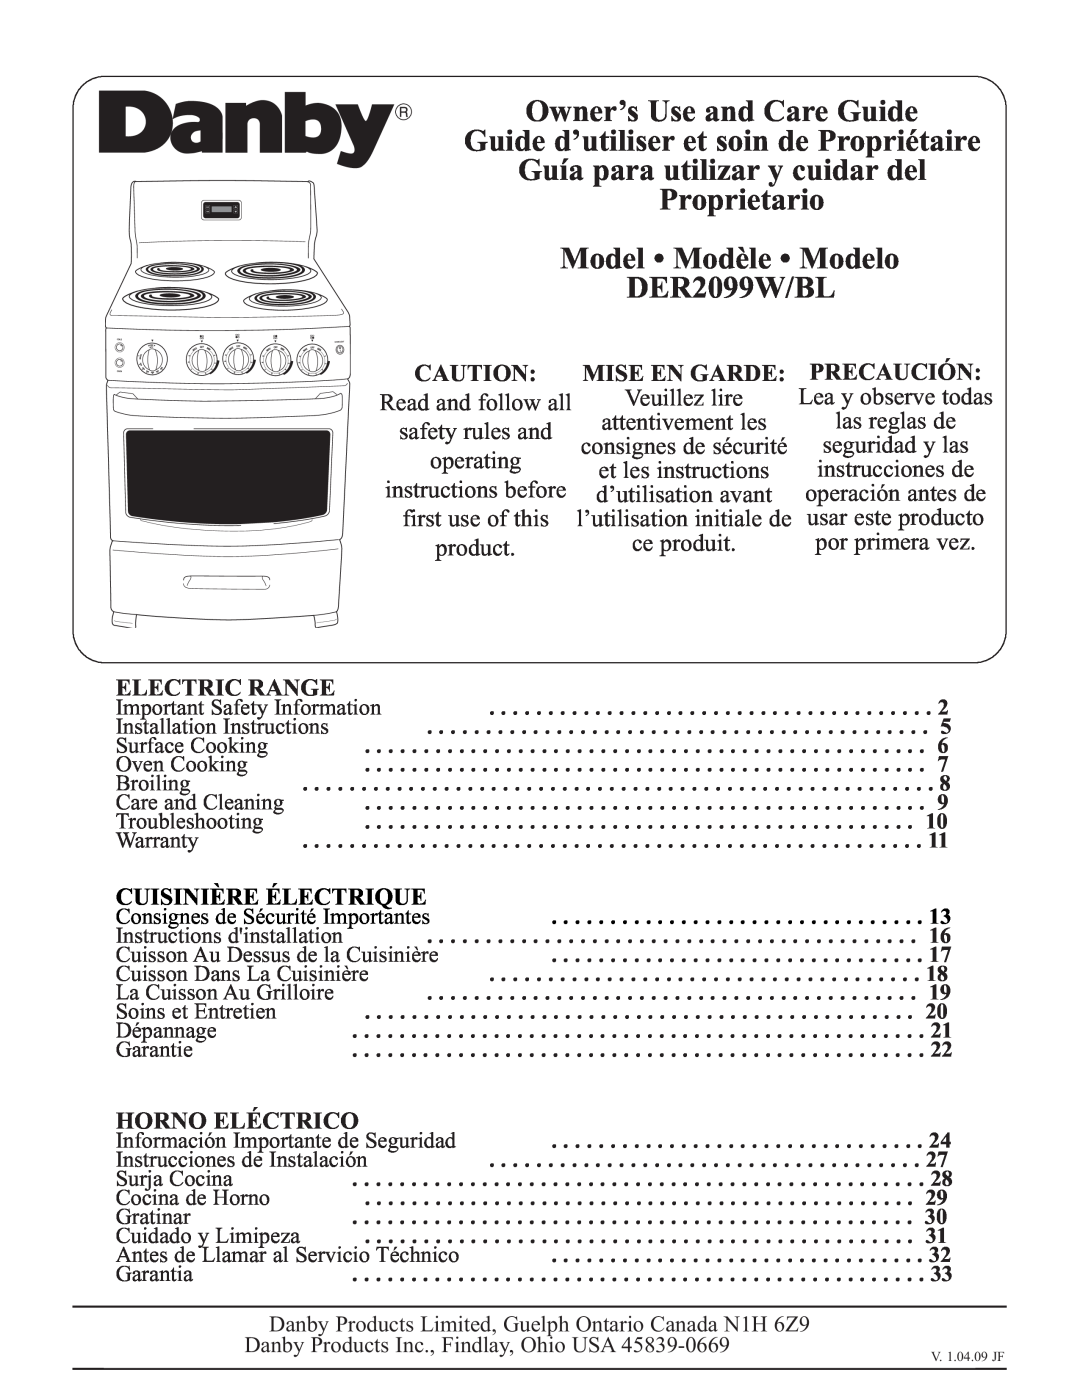 Danby DER2099W installation instructions Mise En Garde, Precaución, Electric Range, Cuisinière Électrique, Horno Eléctrico 